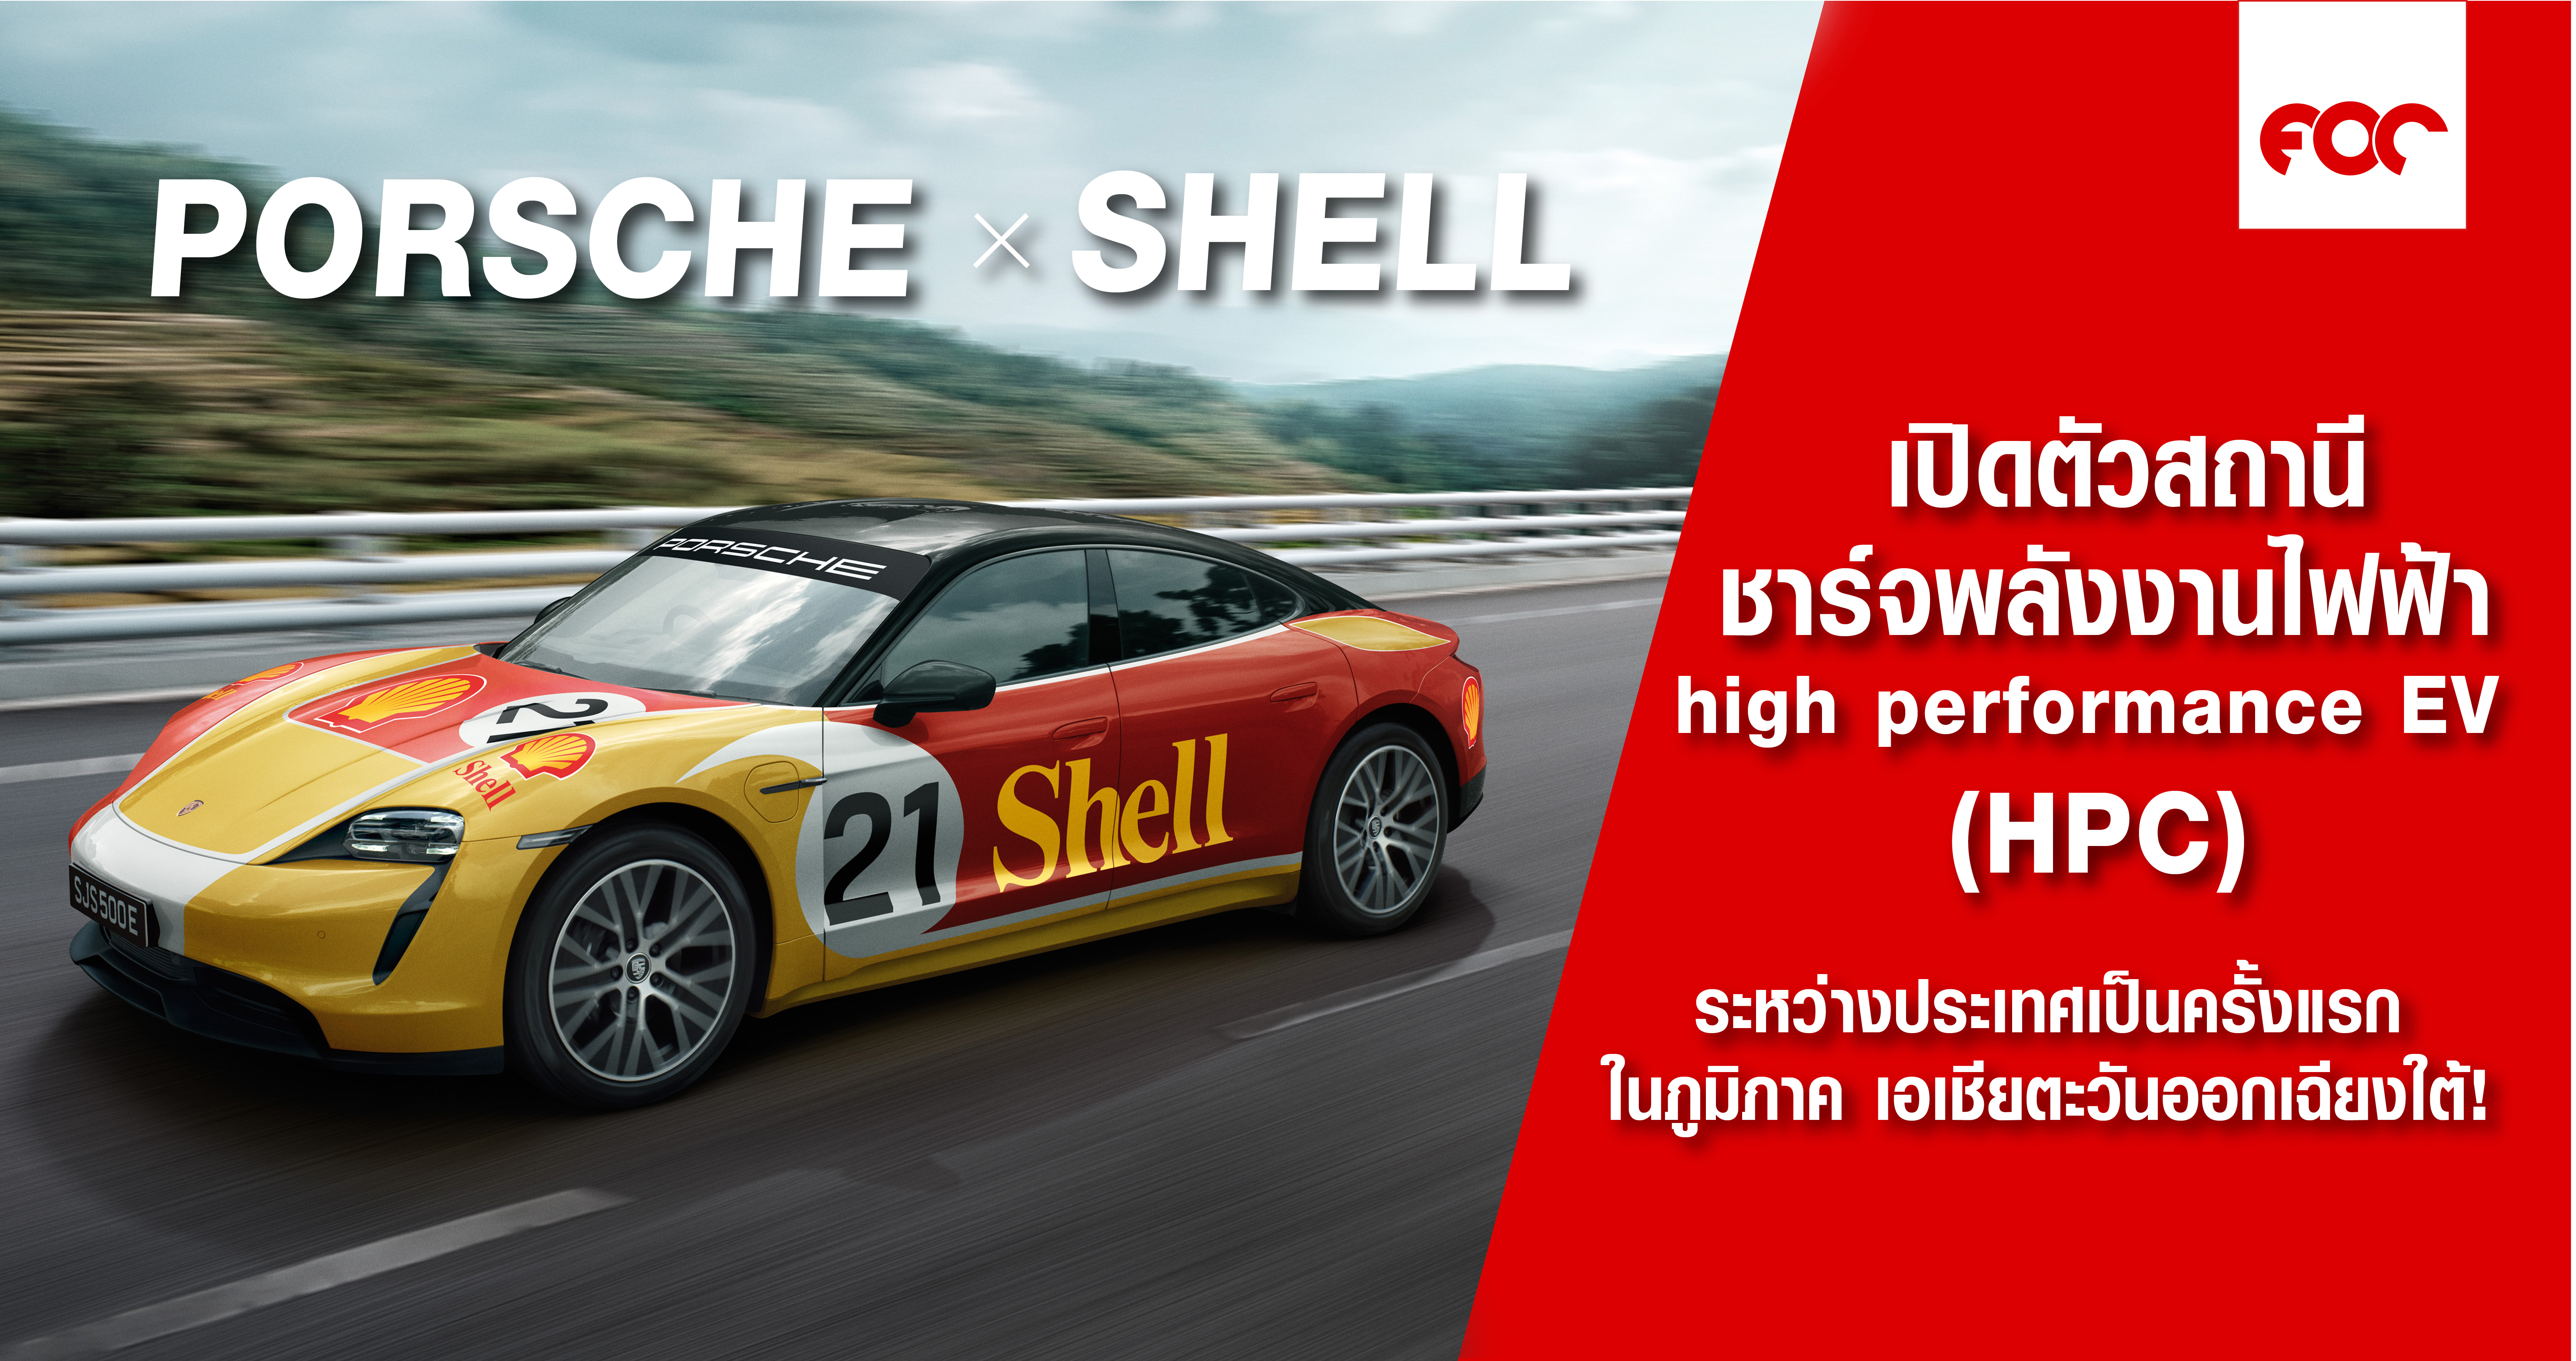 Porsche Asia Pacific จับมือกับ Shell เปิดตัวเครือข่ายสถานีชาร์จพลังงาน high performance EV ระหว่าวประเทศเป็นครั้งแรกในภูมิภาค เอเชียตะวันออกเฉียงใต้